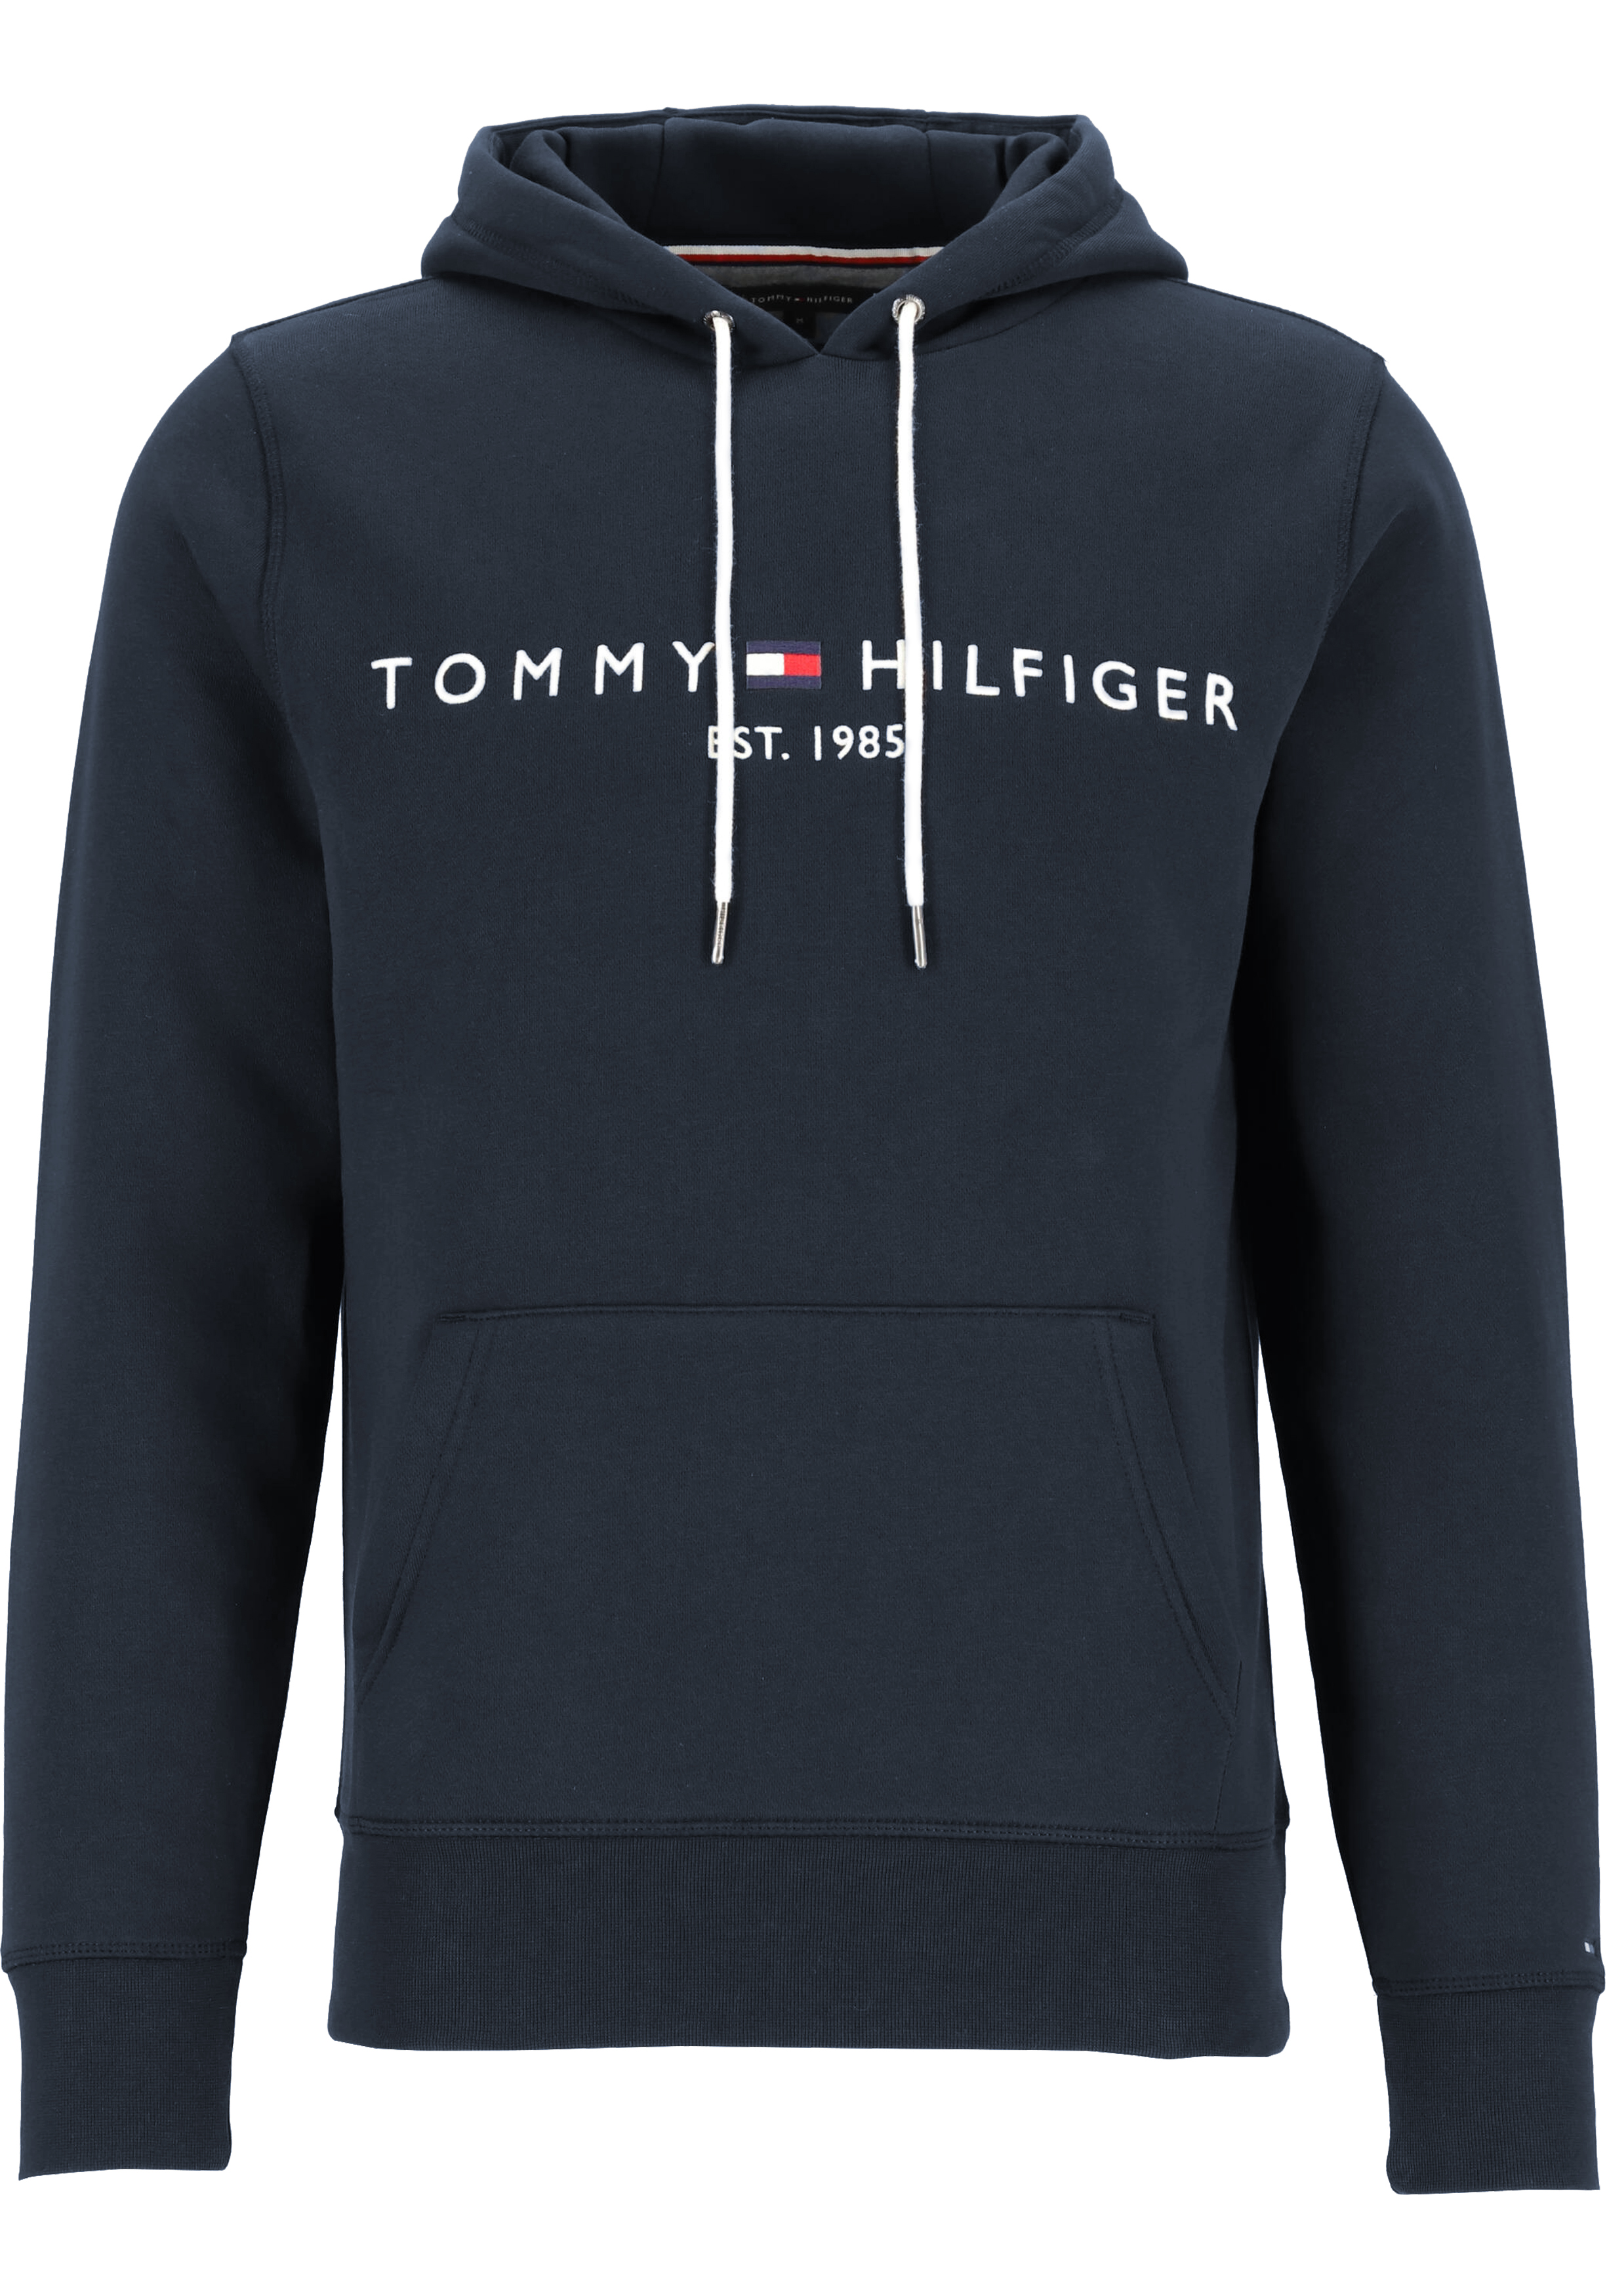 Hoorzitting Promotie haar Tommy Hilfiger Core Tommy logo hoody, regular fit heren sweathoodie,... -  20% Paaskorting op (bijna) alles